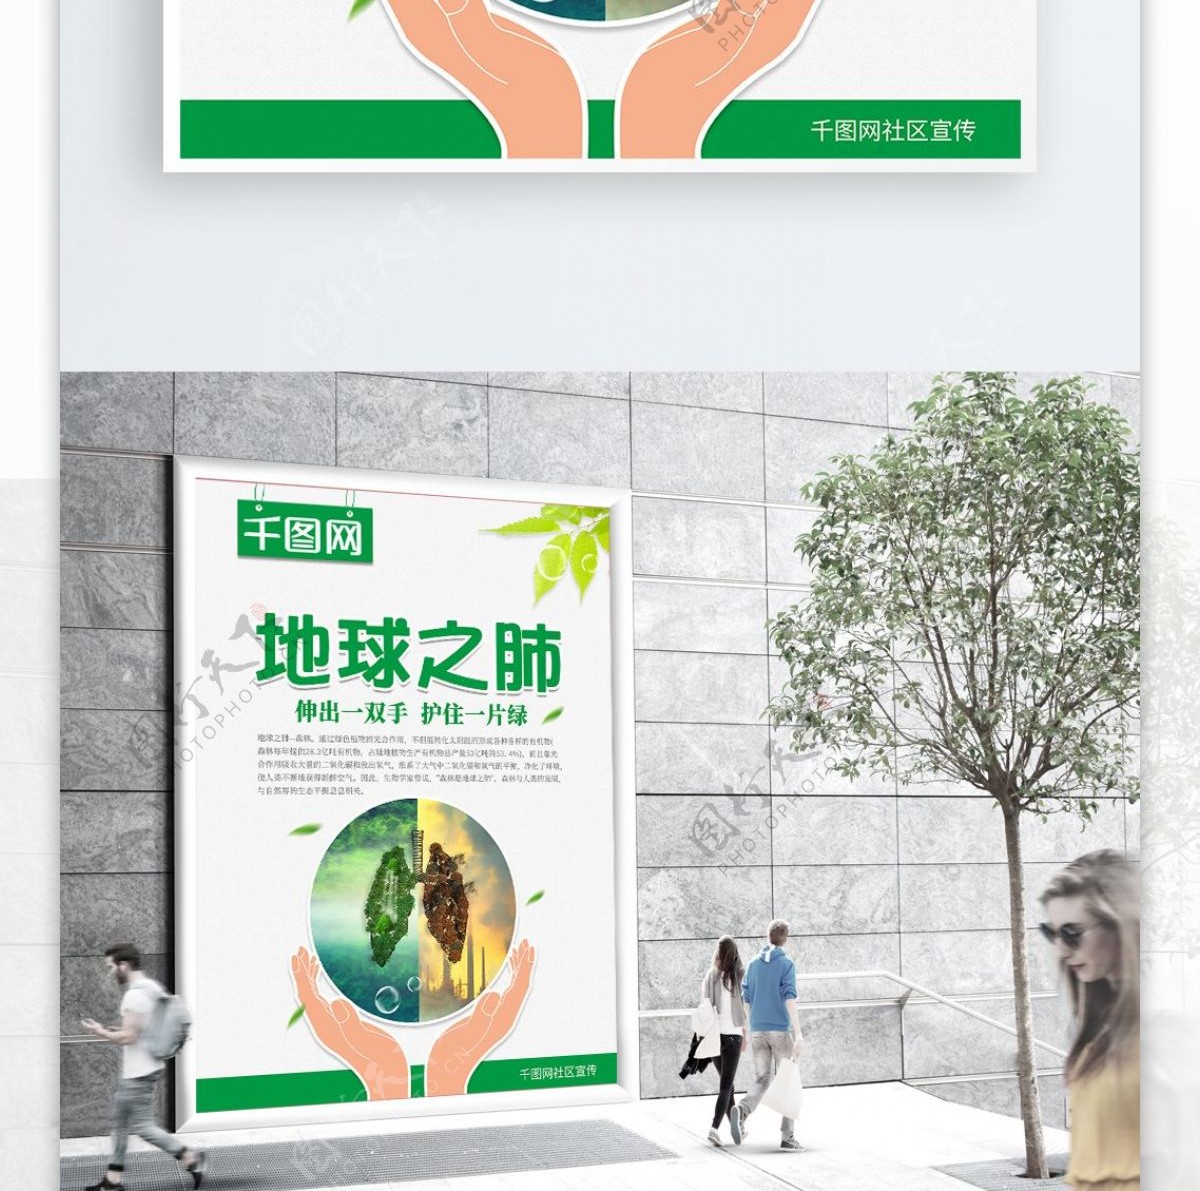 清新绿色地球之肺宣传海报